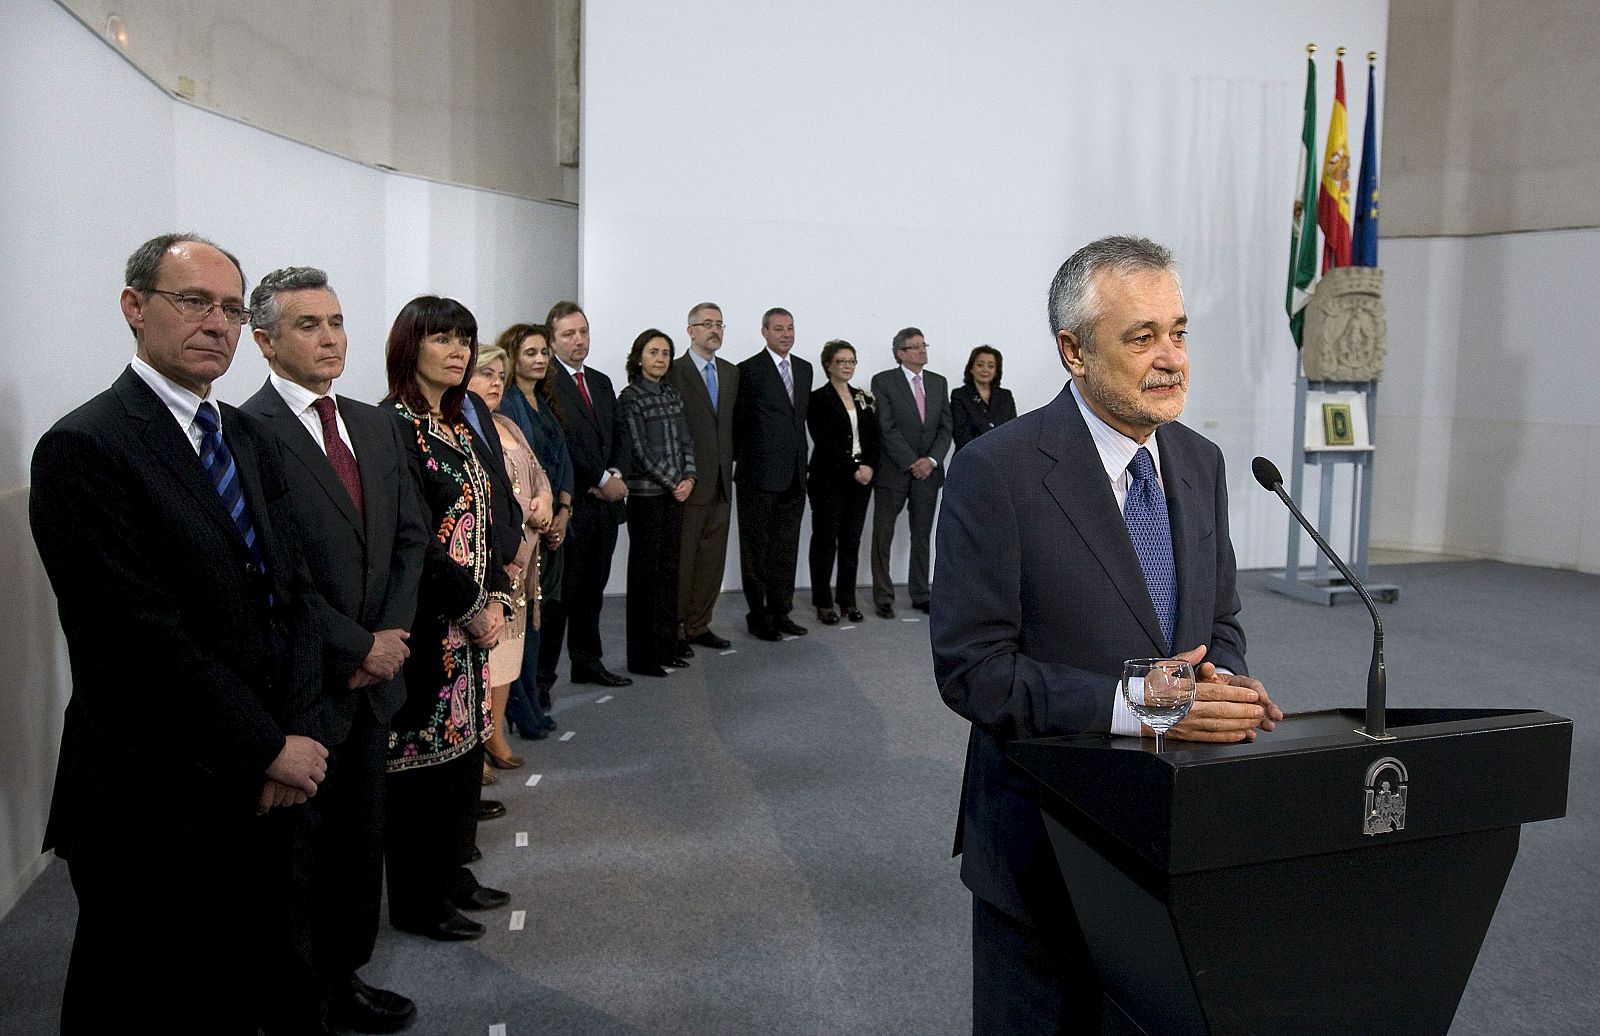 El presidente de la Junta de Andalucía, José Antonio Griñán, durante su intervención tras la toma de posesión de los nuevos consejeros.